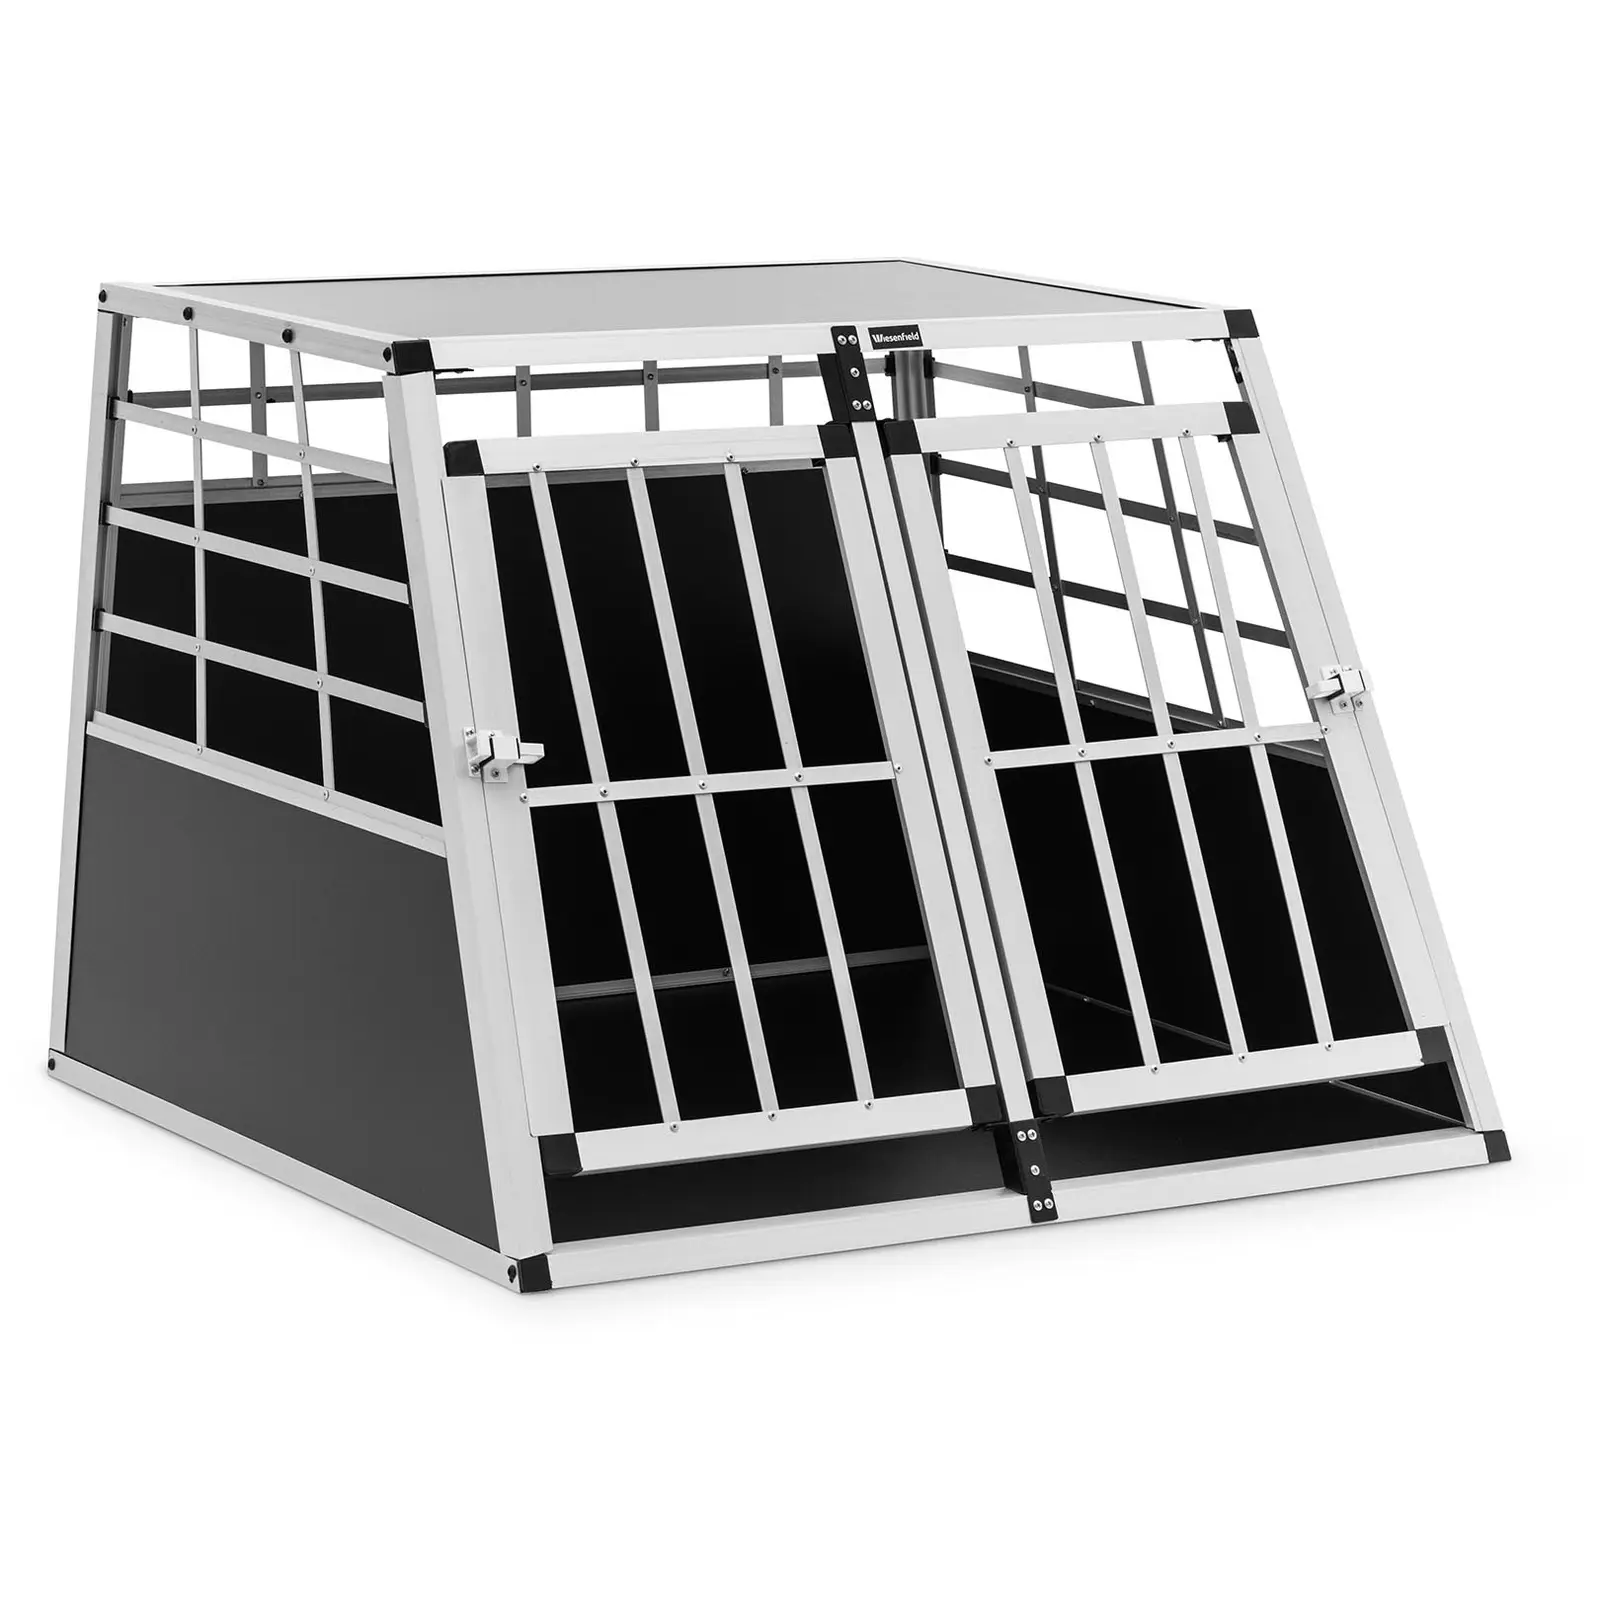 Κλουβί σκύλου - Αλουμίνιο - Τραπεζοειδές σχήμα - 85 x 95 x 69 cm